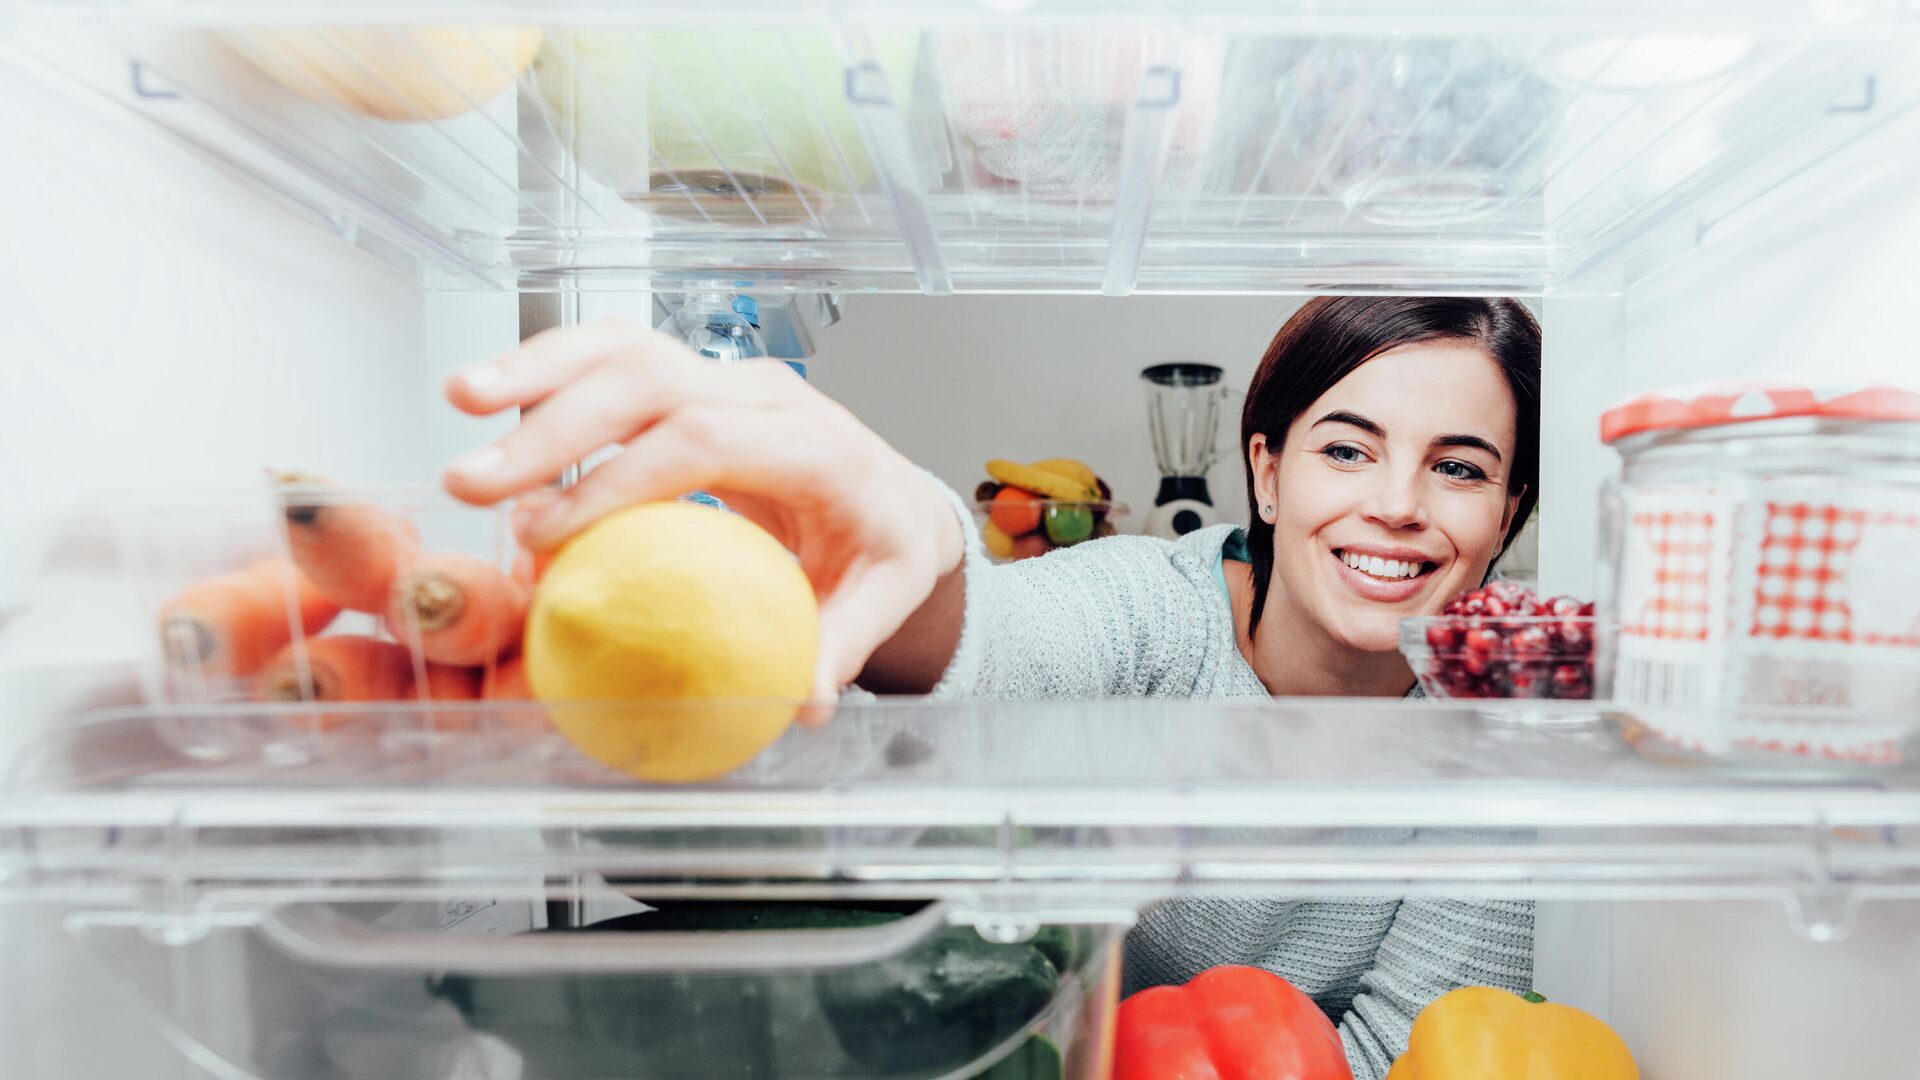 Сравнение холодильников: лучшие модели на рынке